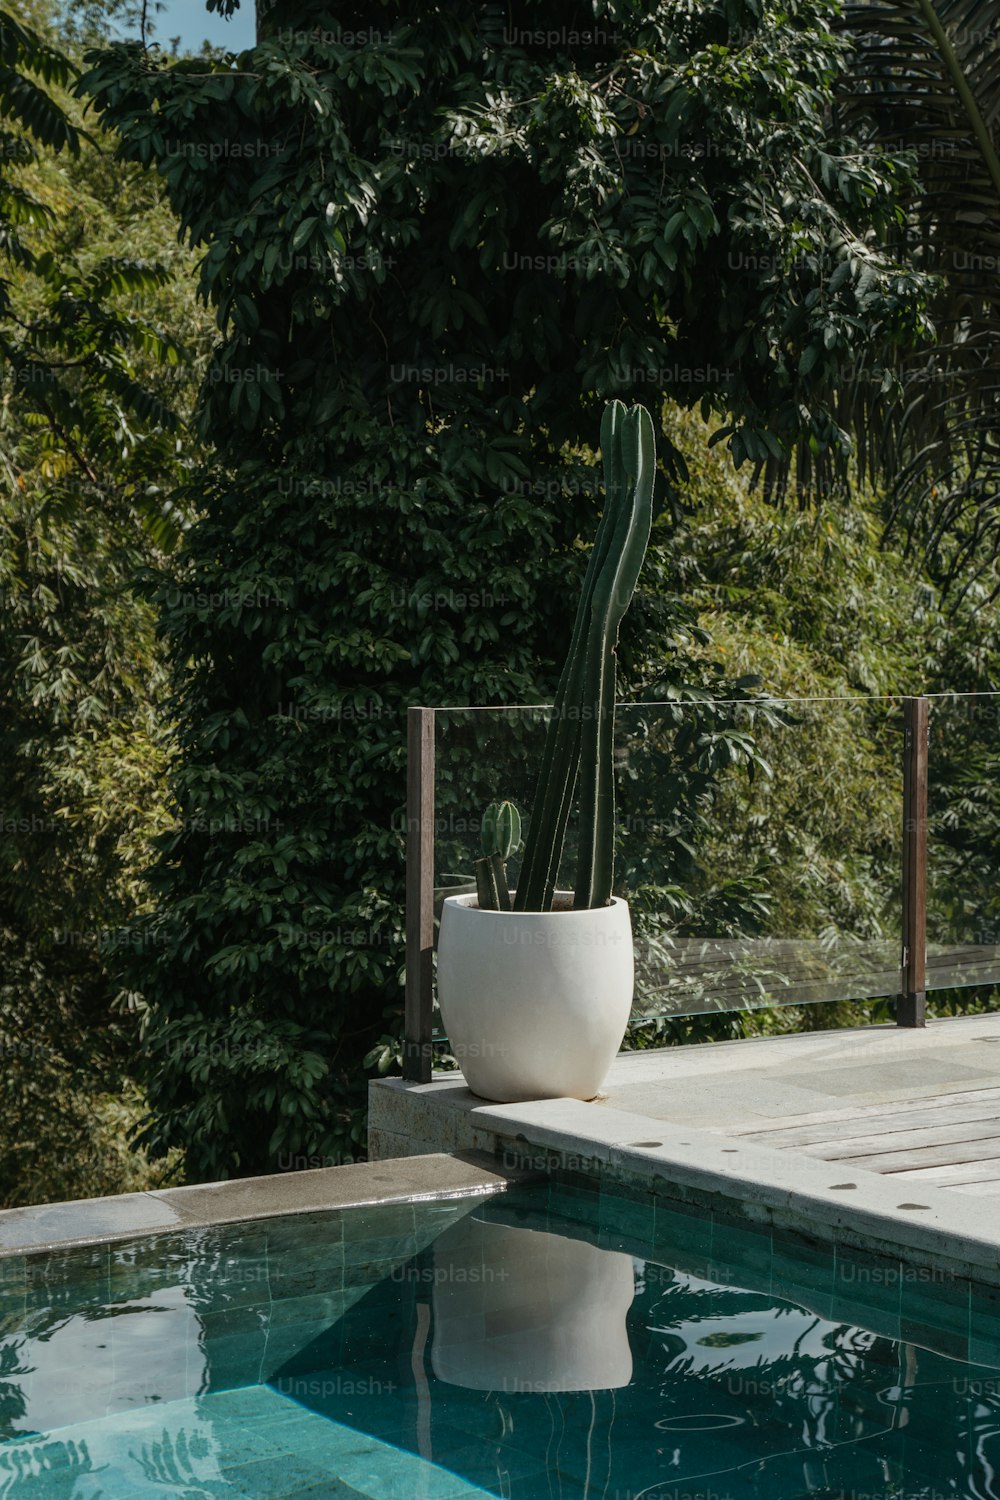 Un cactus grande en una maceta blanca junto a una piscina